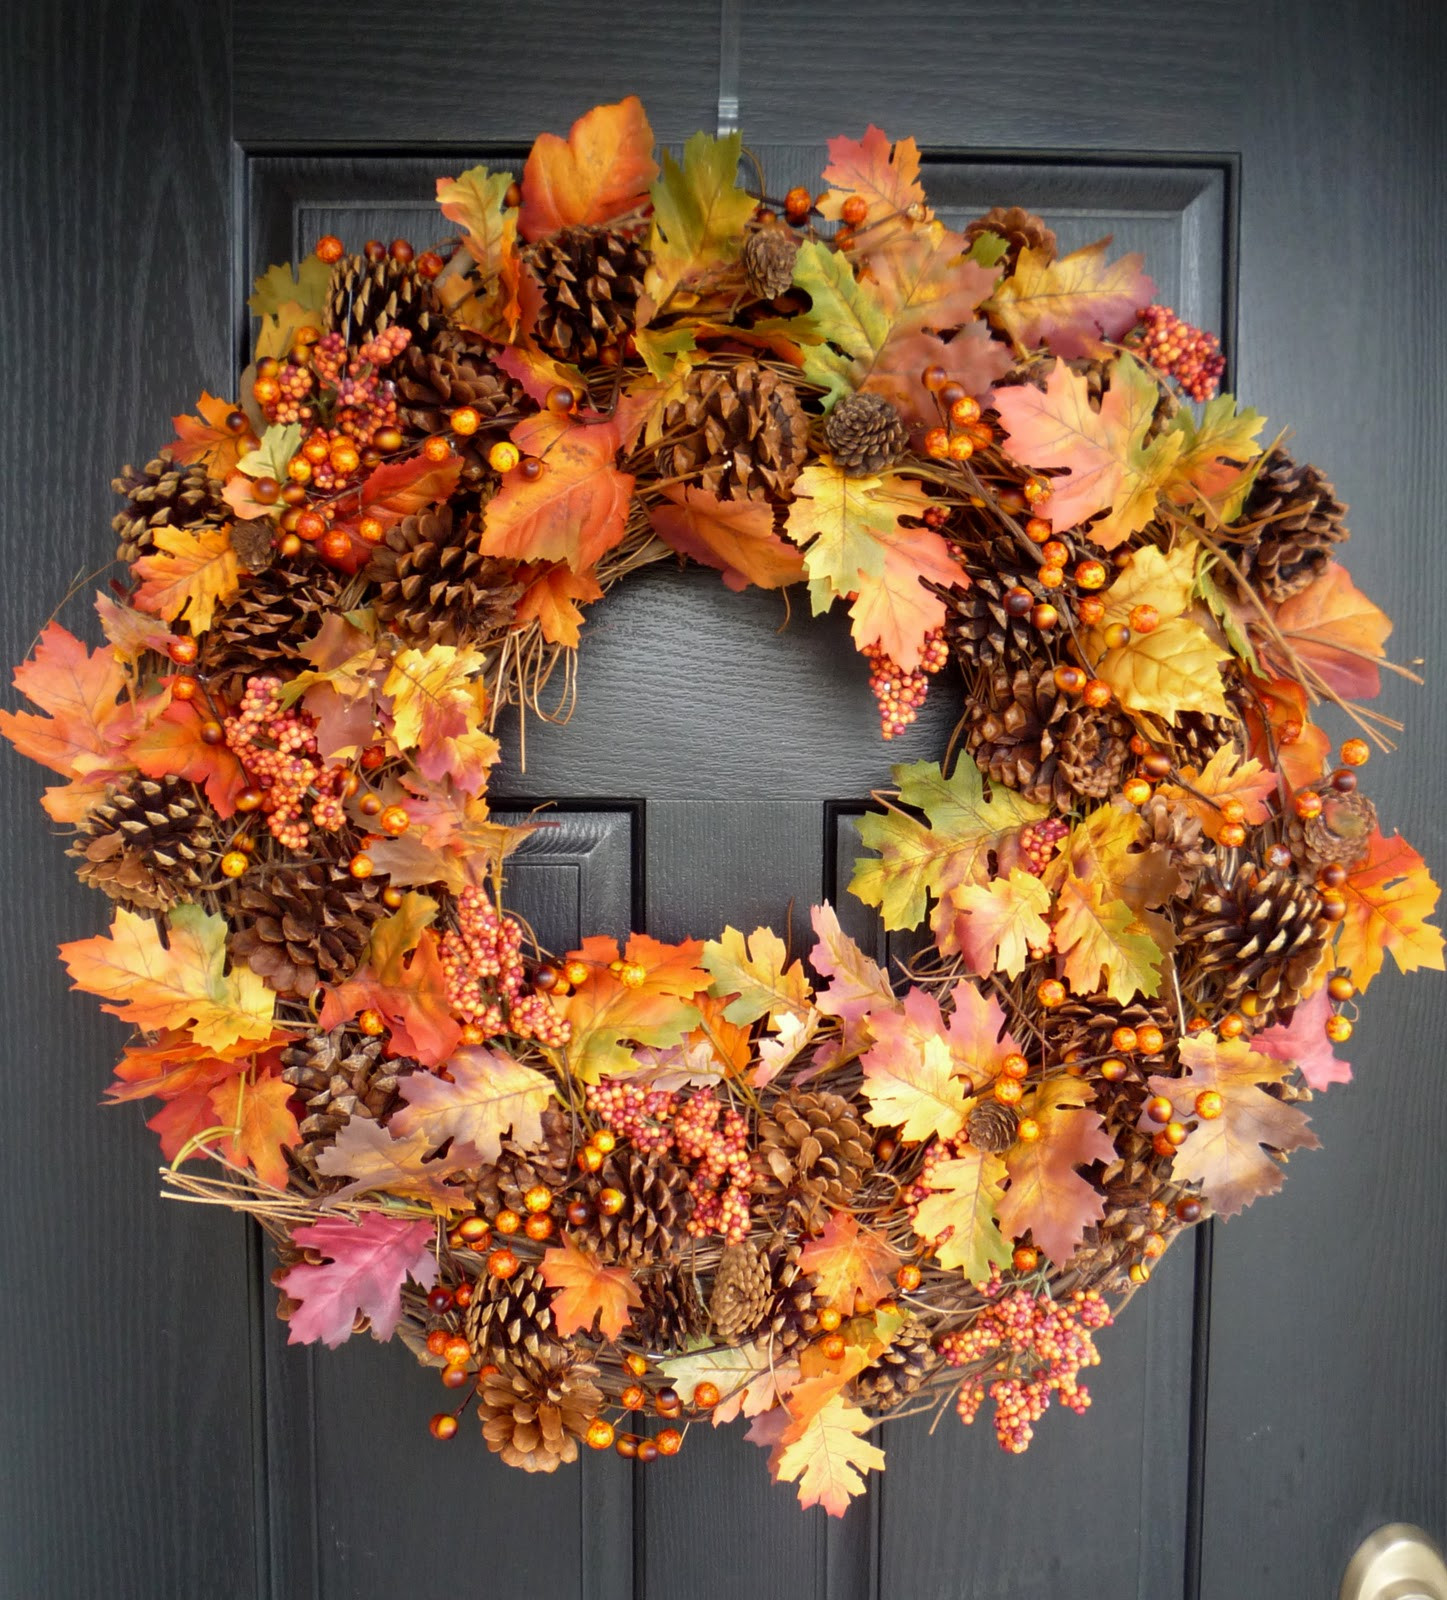 Diy Fall Wreath Ideas
 Crafty Sisters "Plump" Fall Wreath